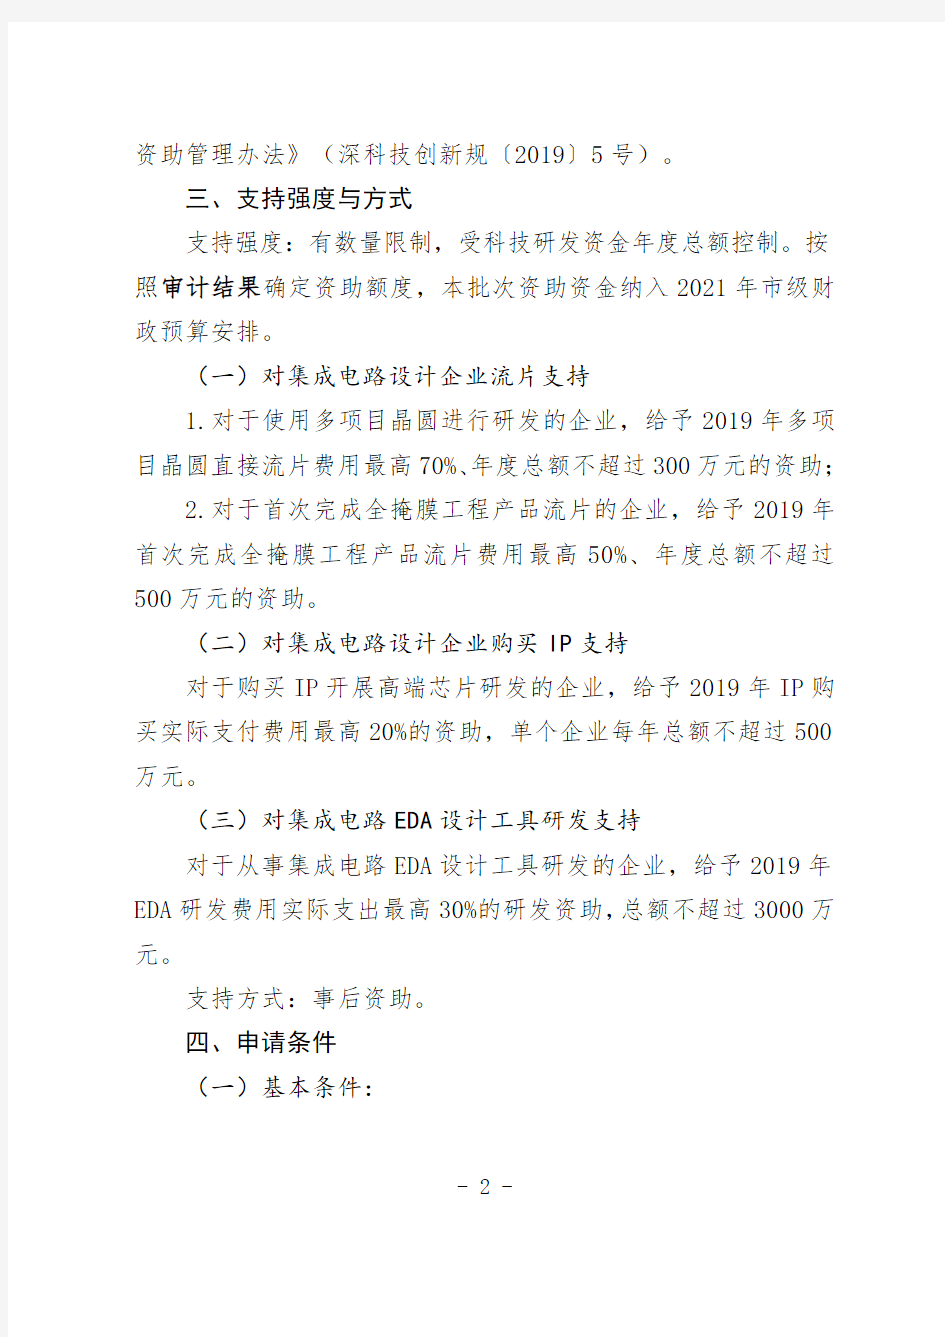 深圳市科技创新委员会2021年集成电路专项资助计划项目申请指南